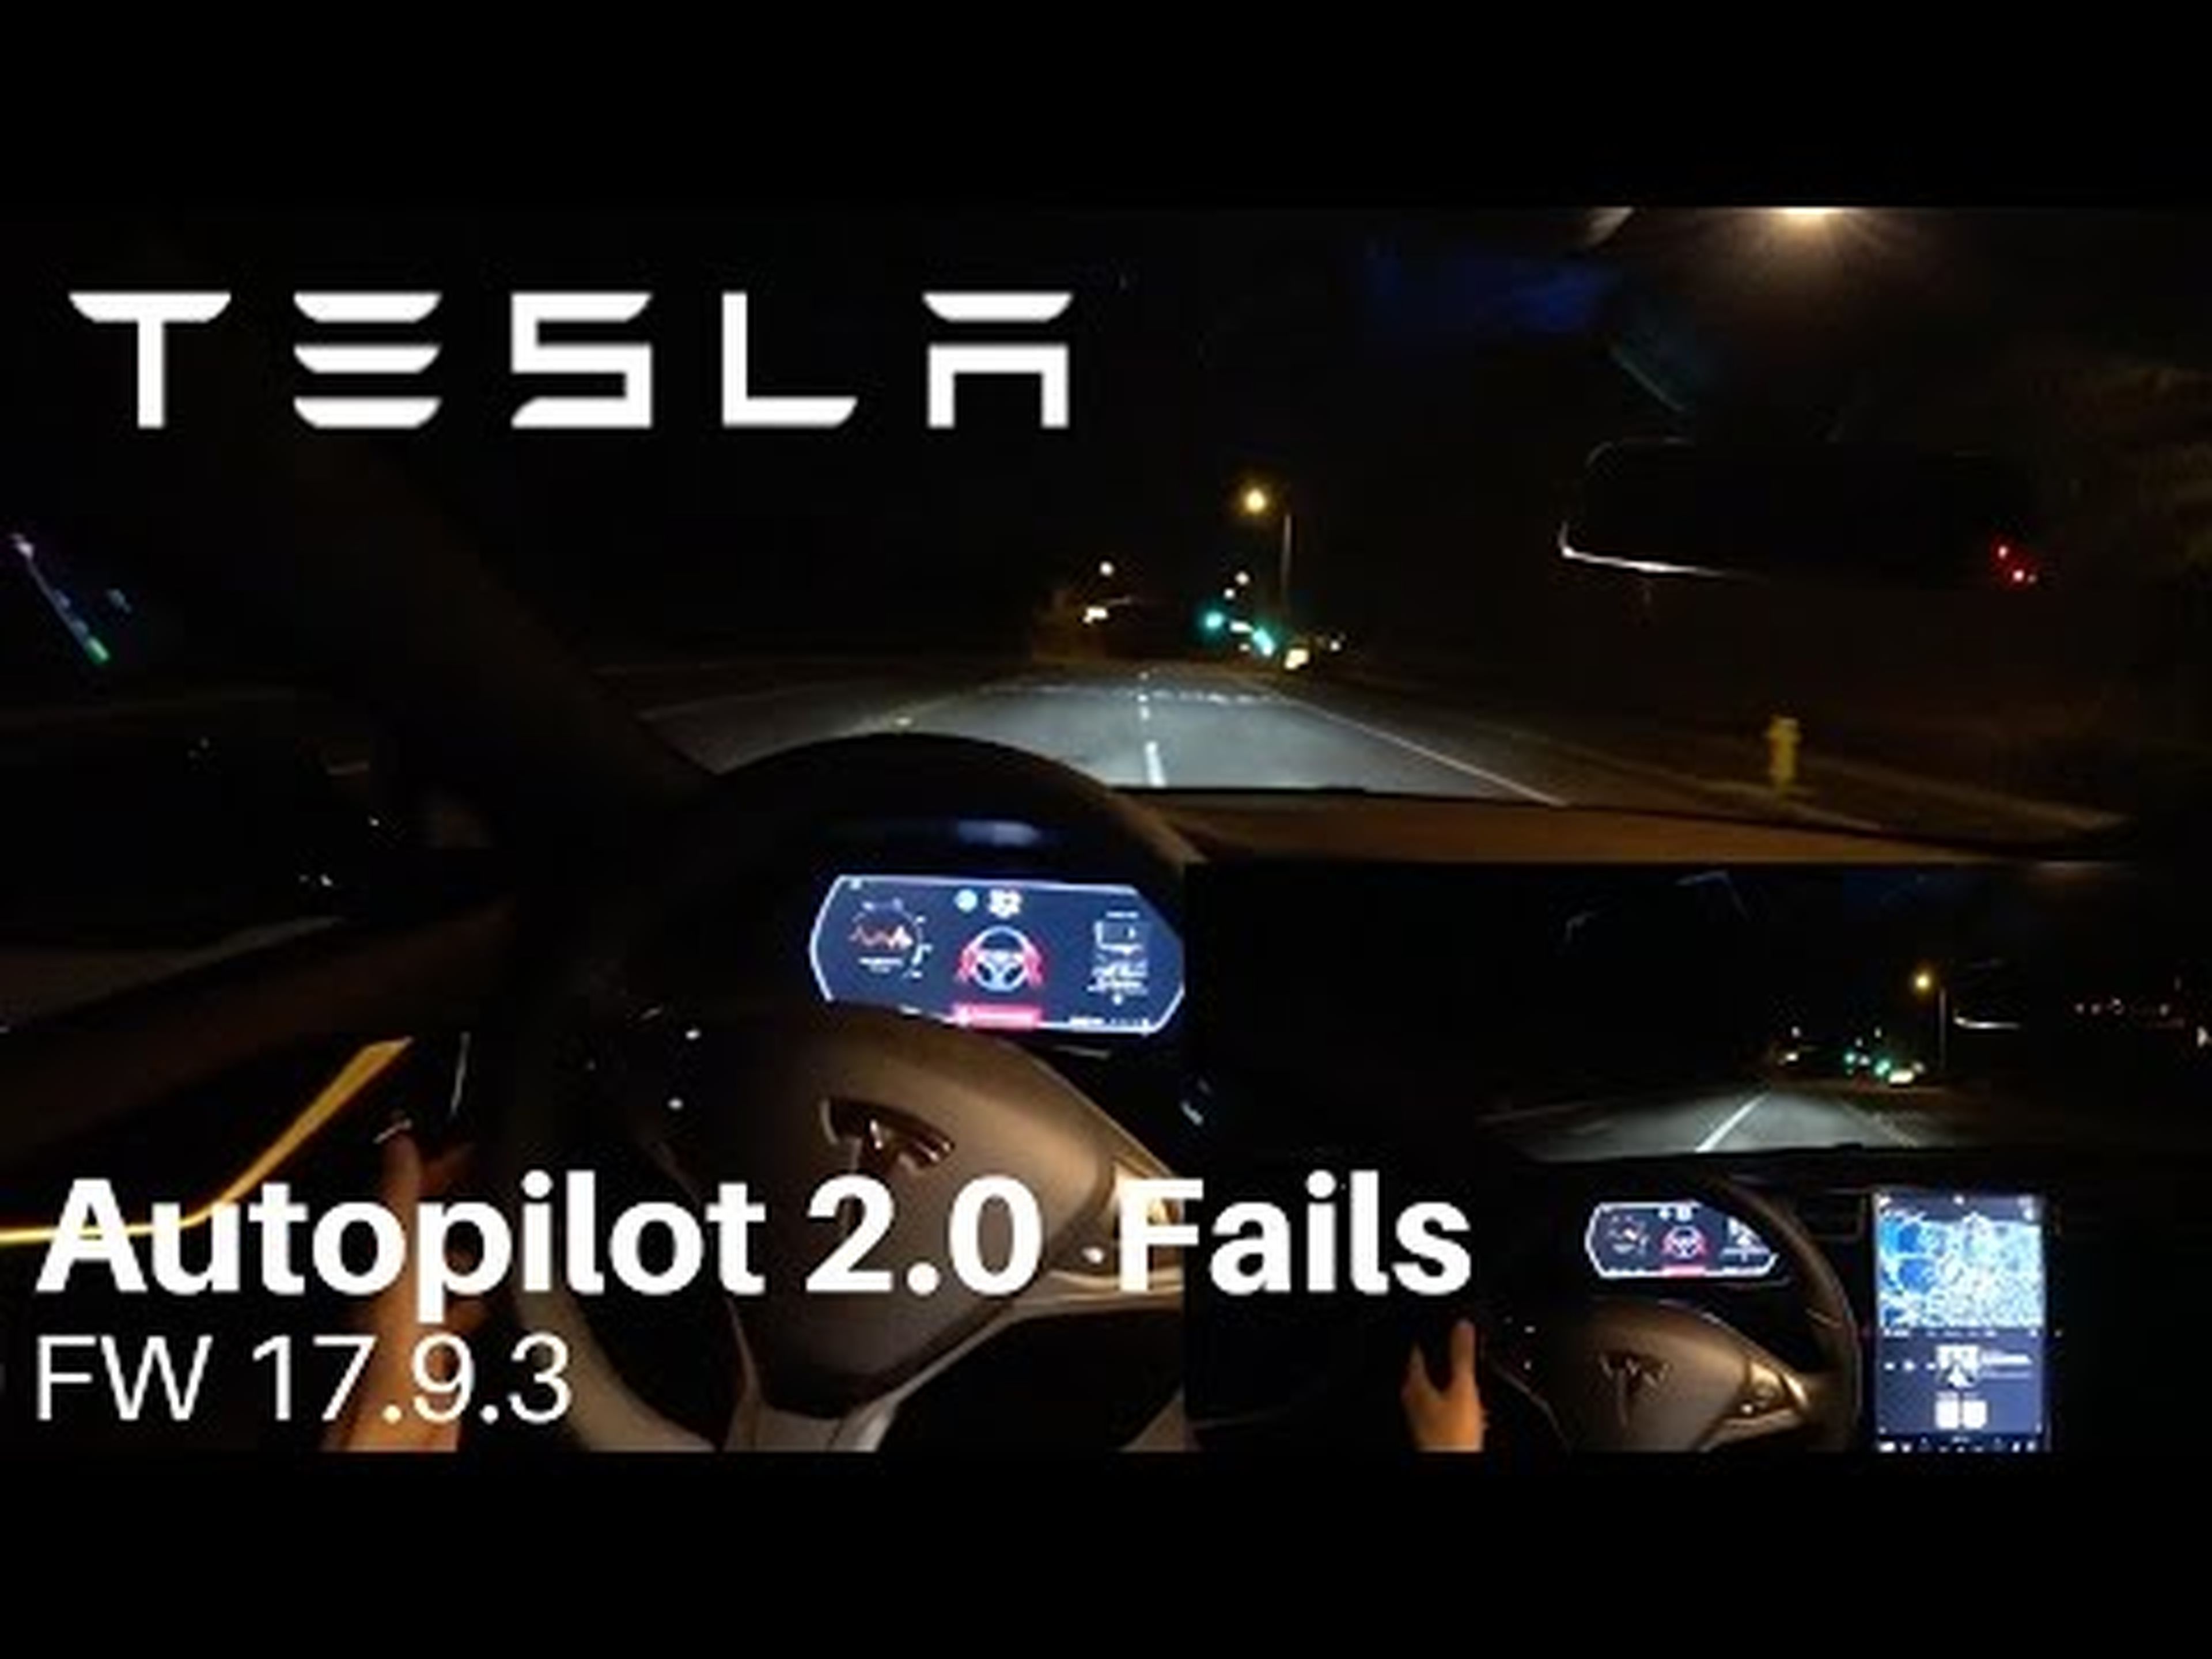 TESLA Autopilot 2.0